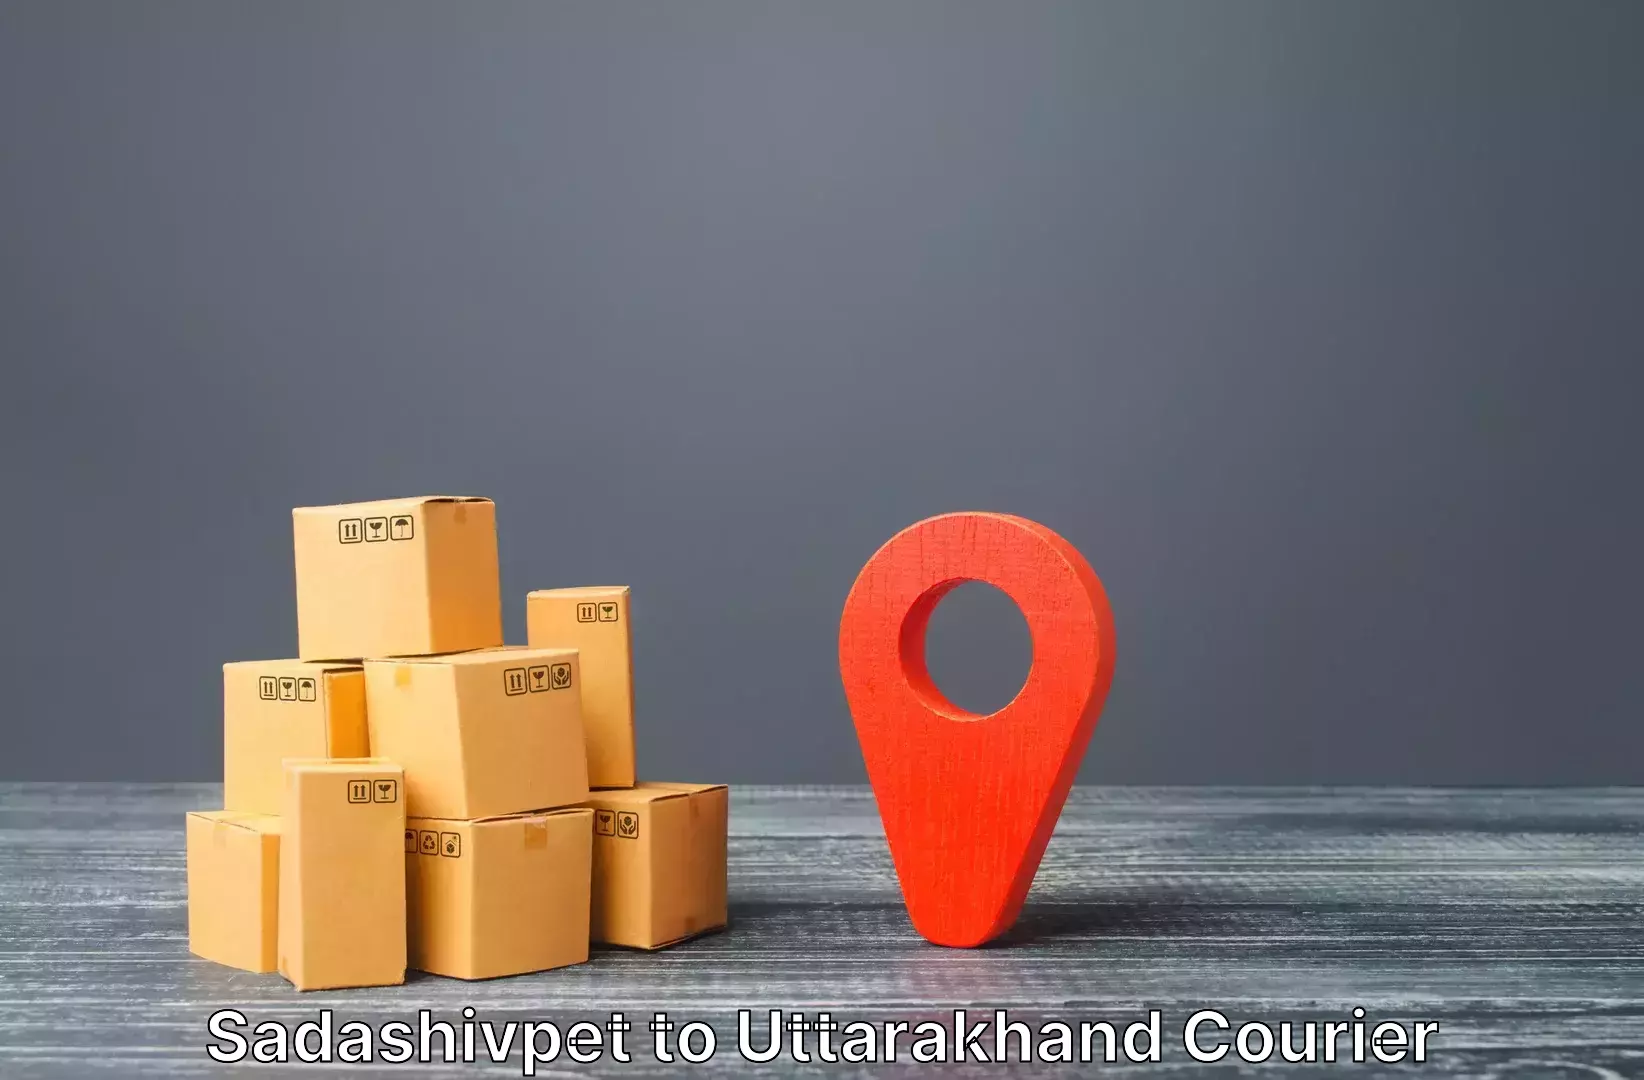 Online luggage shipping booking Sadashivpet to Rudrapur